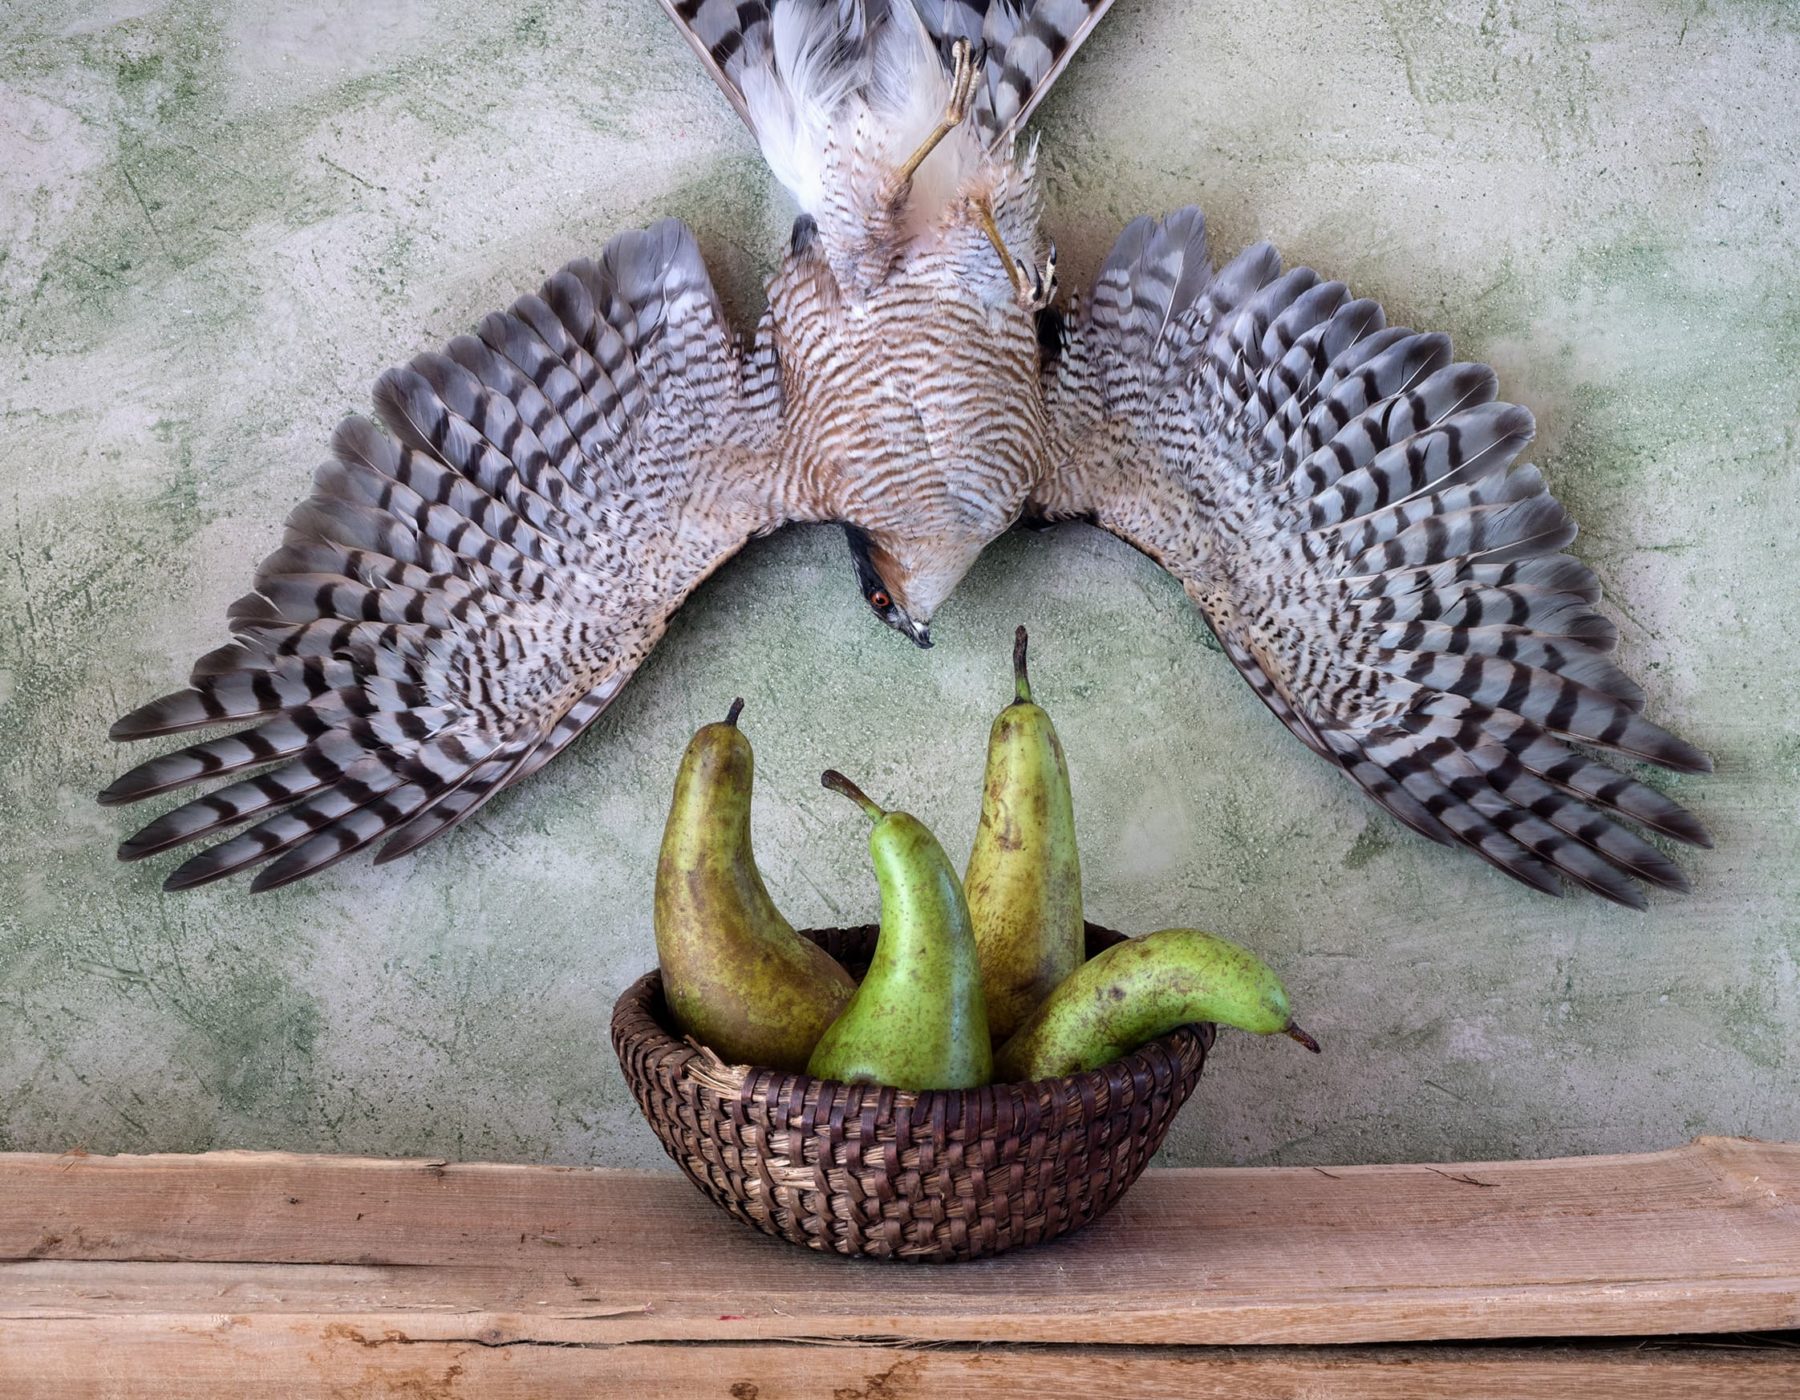 Raubvogel hängt kopfüber mt ausgebreiteten Flügel an der Wand, darunter ein Brotkorb mit 4 Birnen